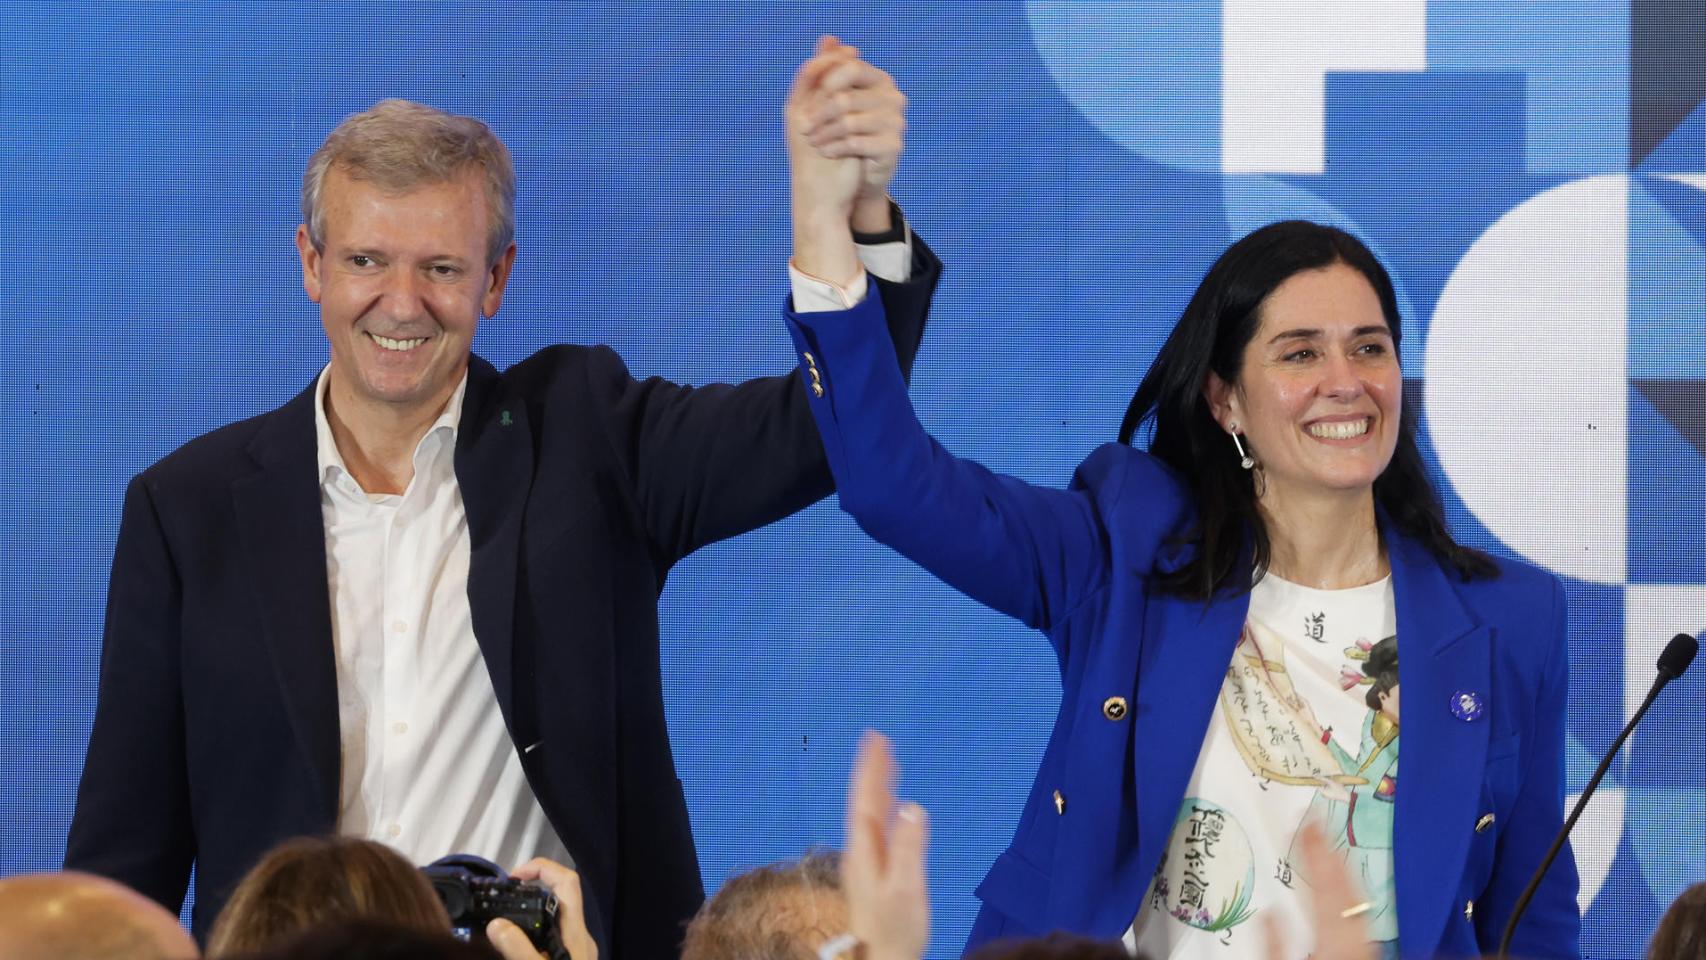 El candidato Popular a la Xunta, Alfonso Rueda (i), junto a la secretaria general del partido en Galicia, Paula Prado, saluda tras resultar ganador de las elecciones gallegas del 18-F.